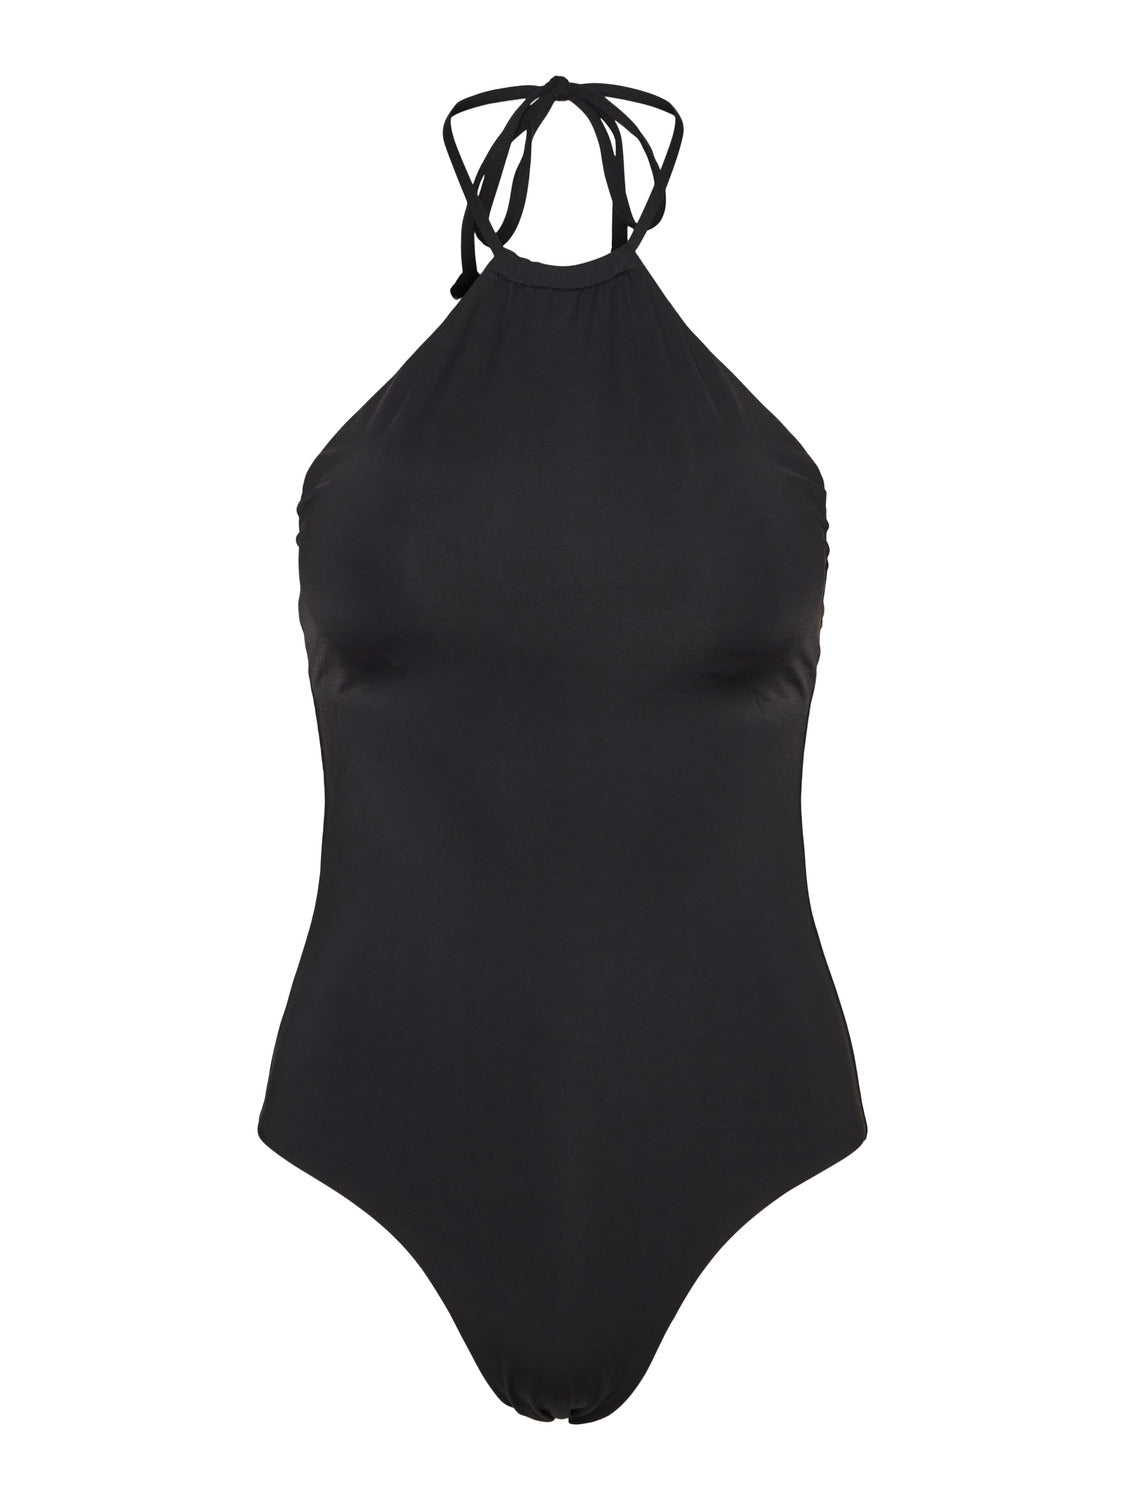 VMDIANE Swimsuit - Black